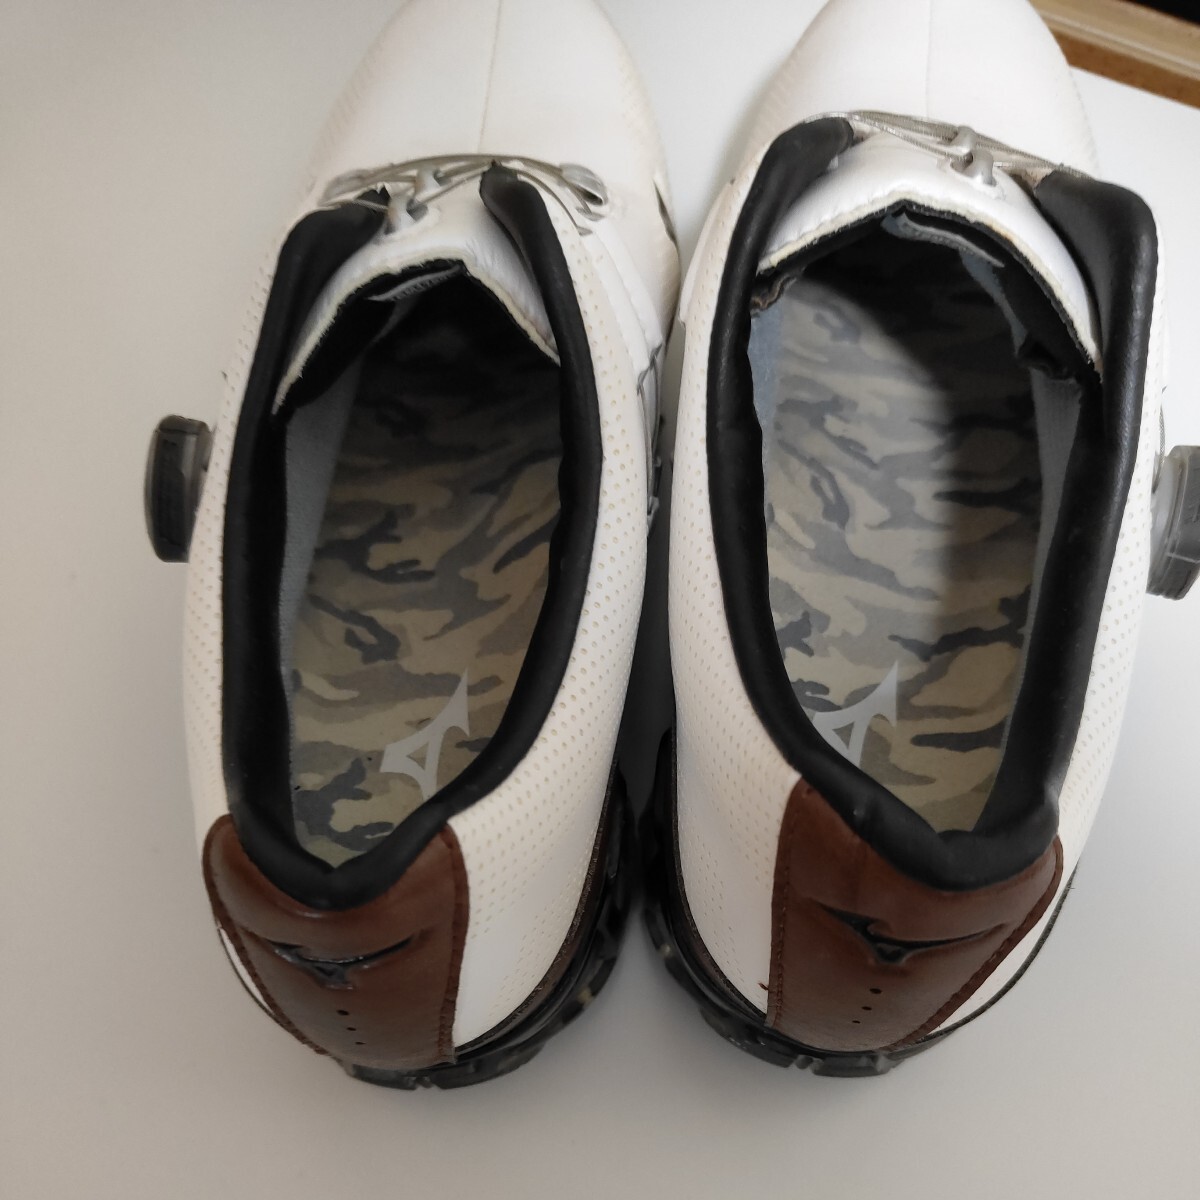  Mizuno туфли для гольфа 25.0cm 51GM170055 GENEM Brown б/у товар хорошая вещь белый боа 